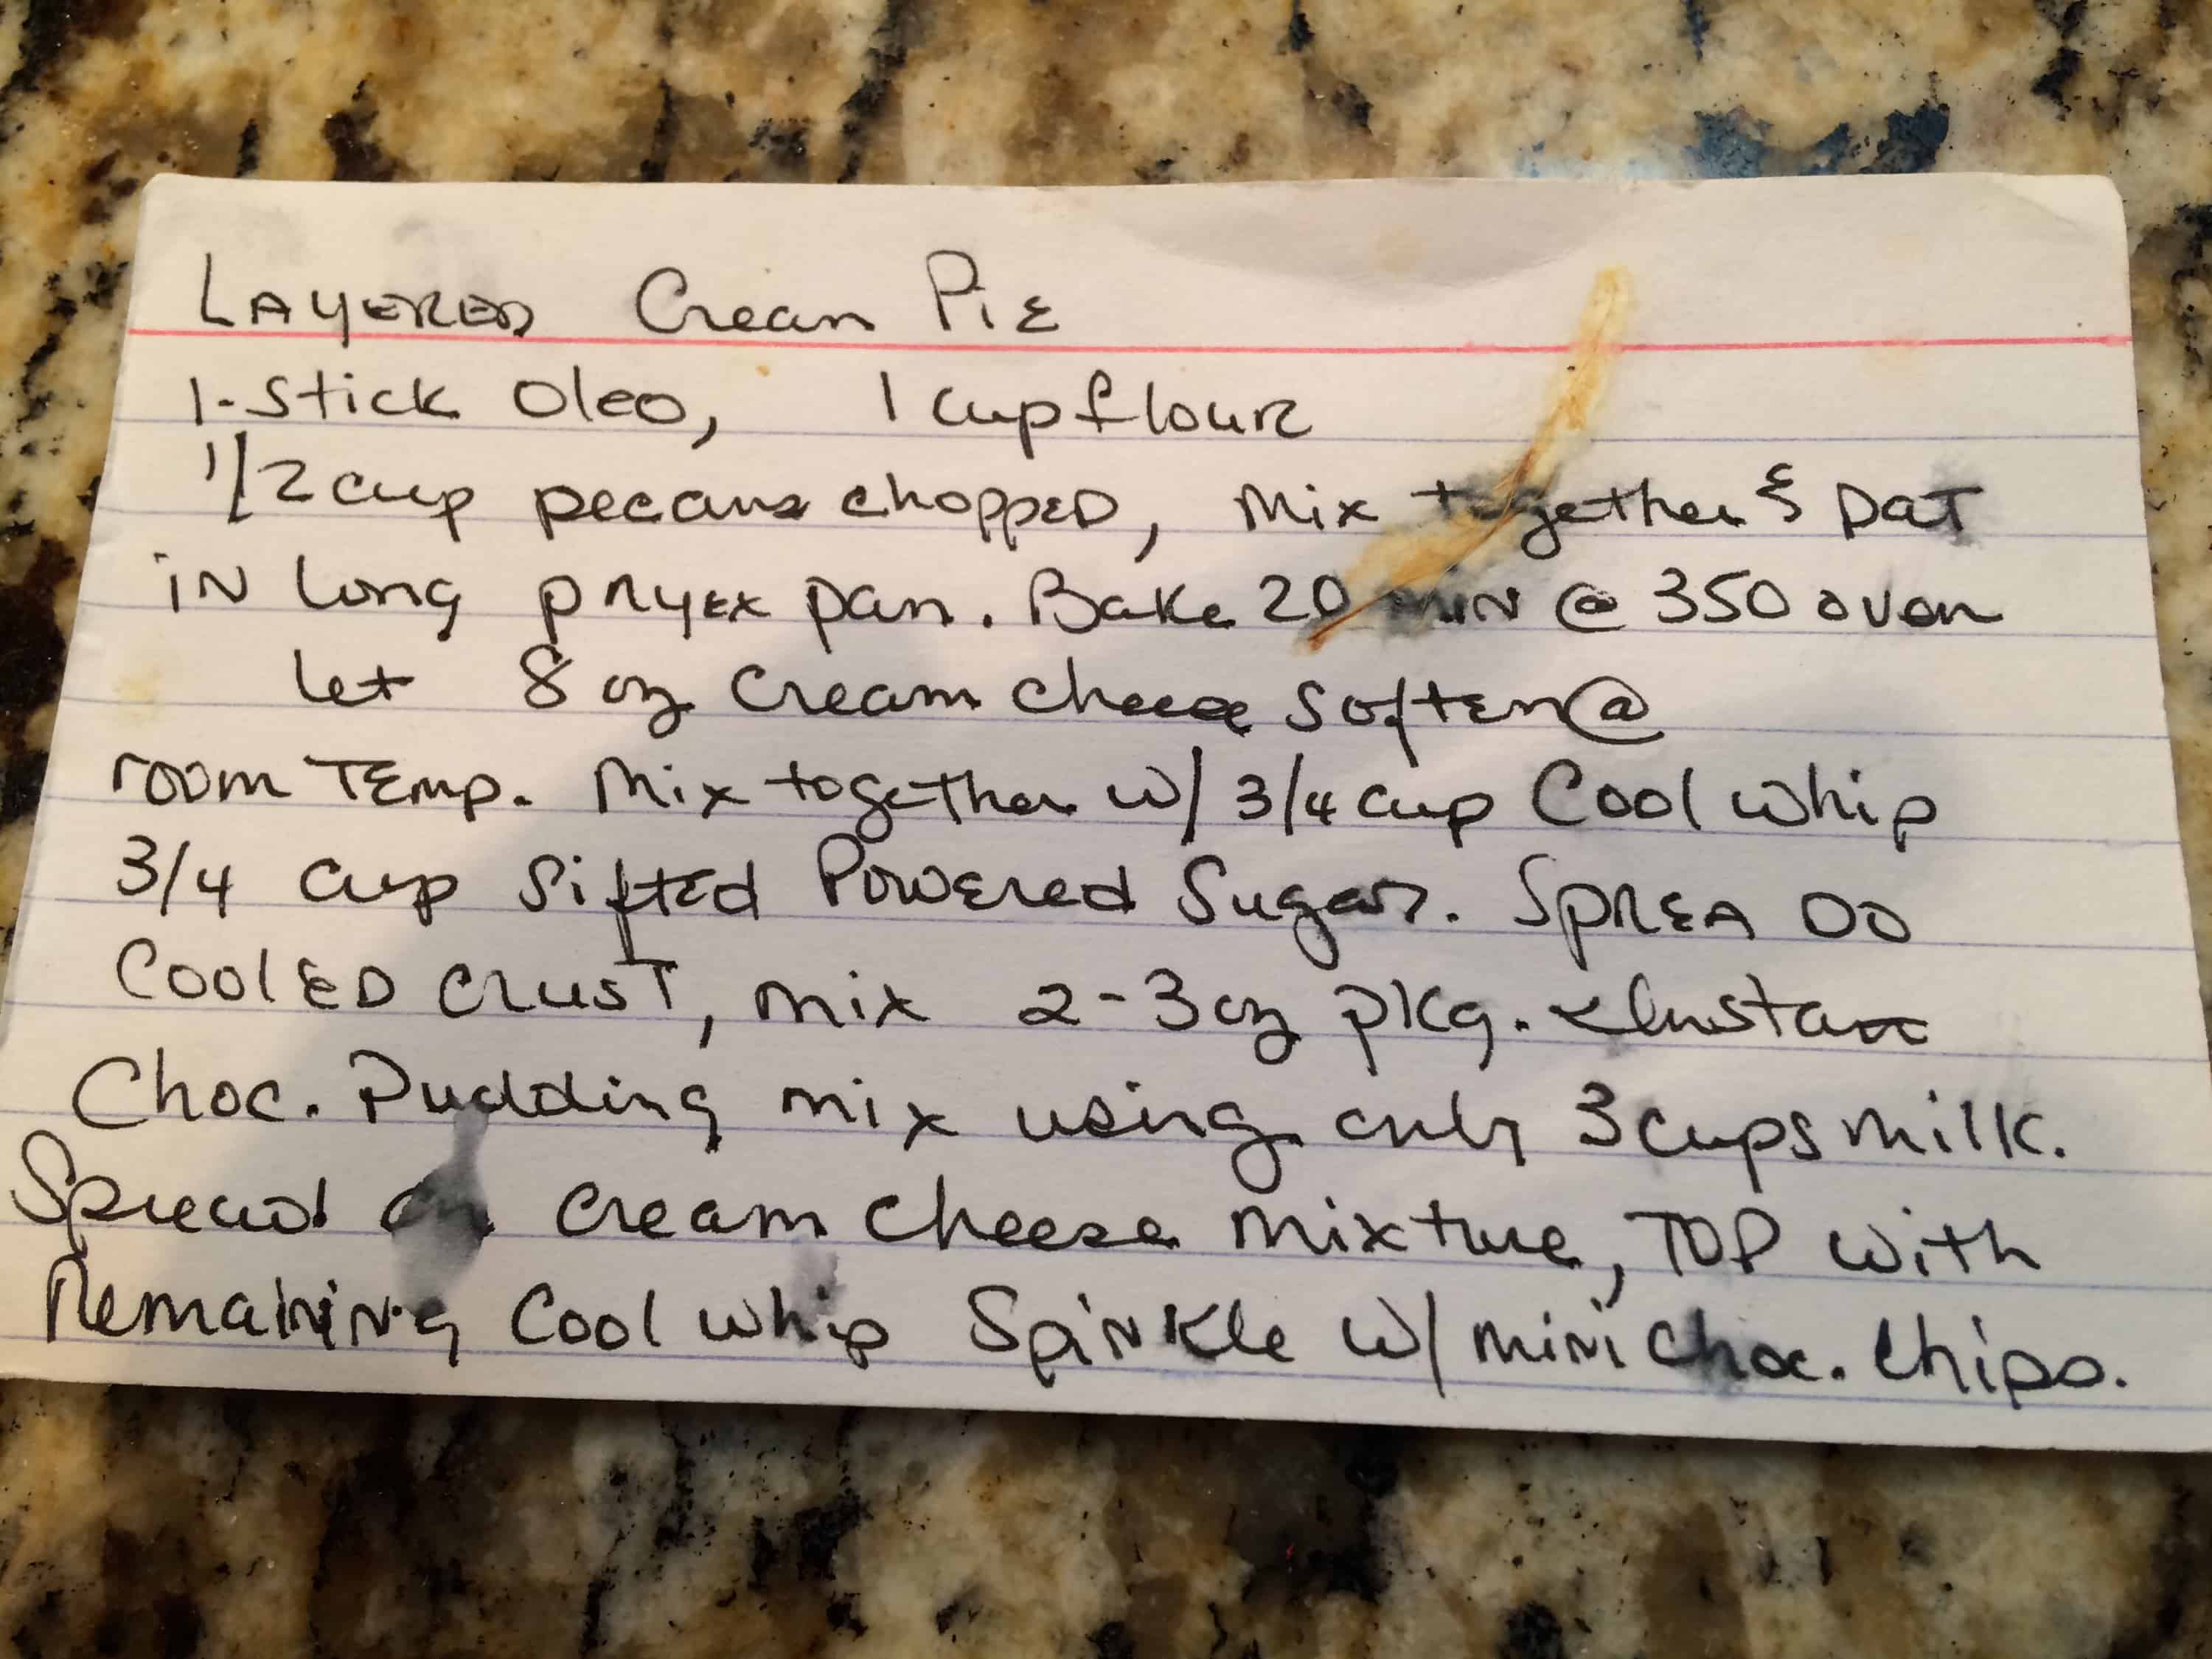 original card recipe for pudding cake.